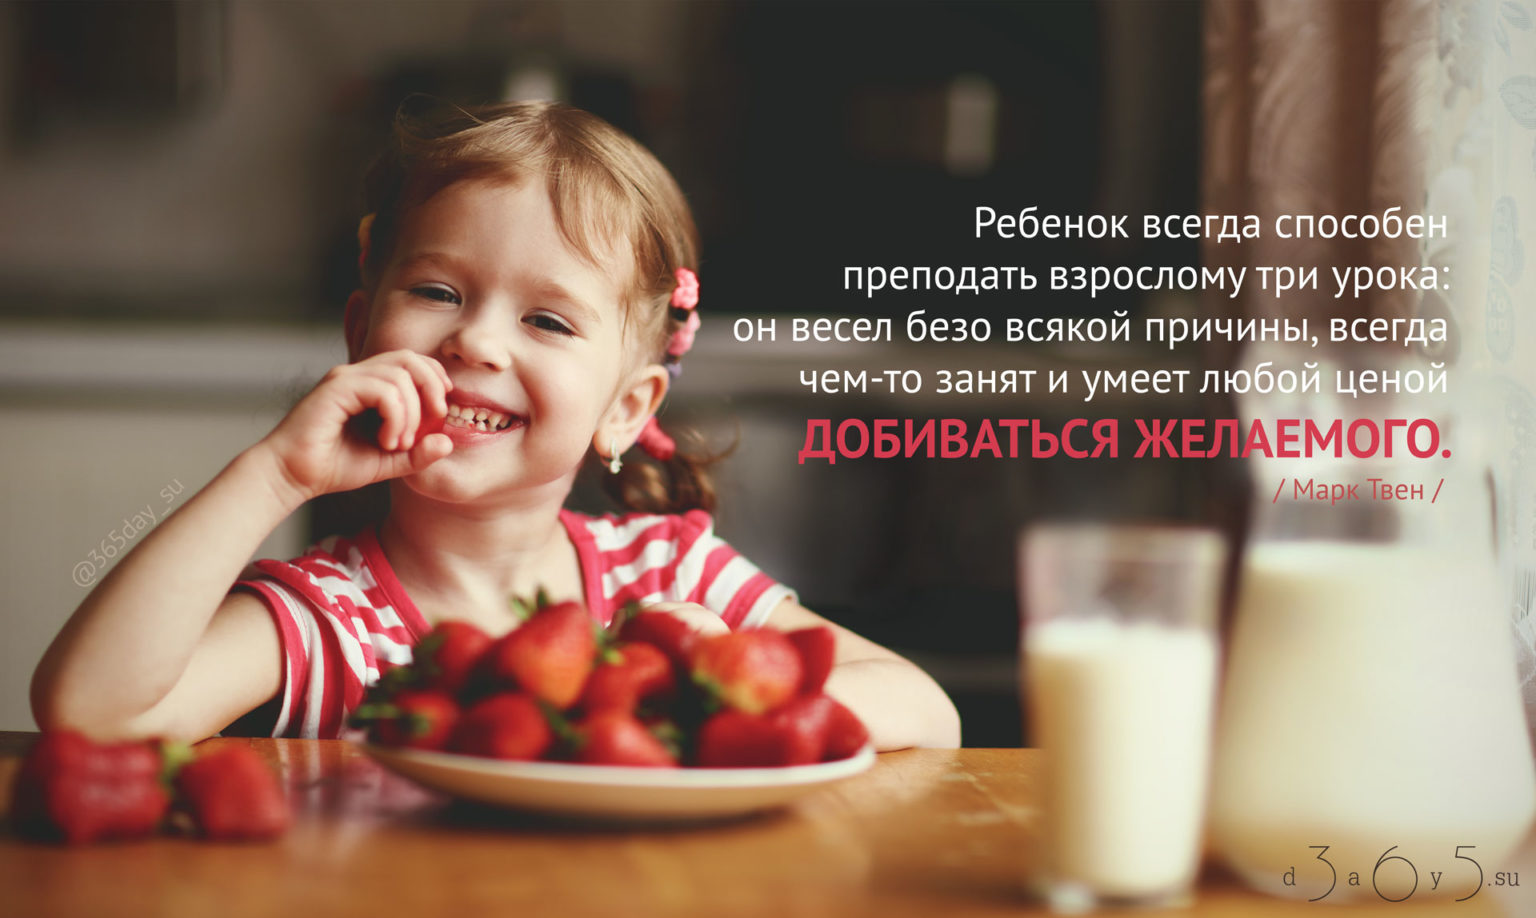 Детей не всегда можно. Ребенок способен преподать взрослому три урока. Мотивация детей. Ребенок всегда способен преподать взрослому три. Ребенок кушает ягоды.